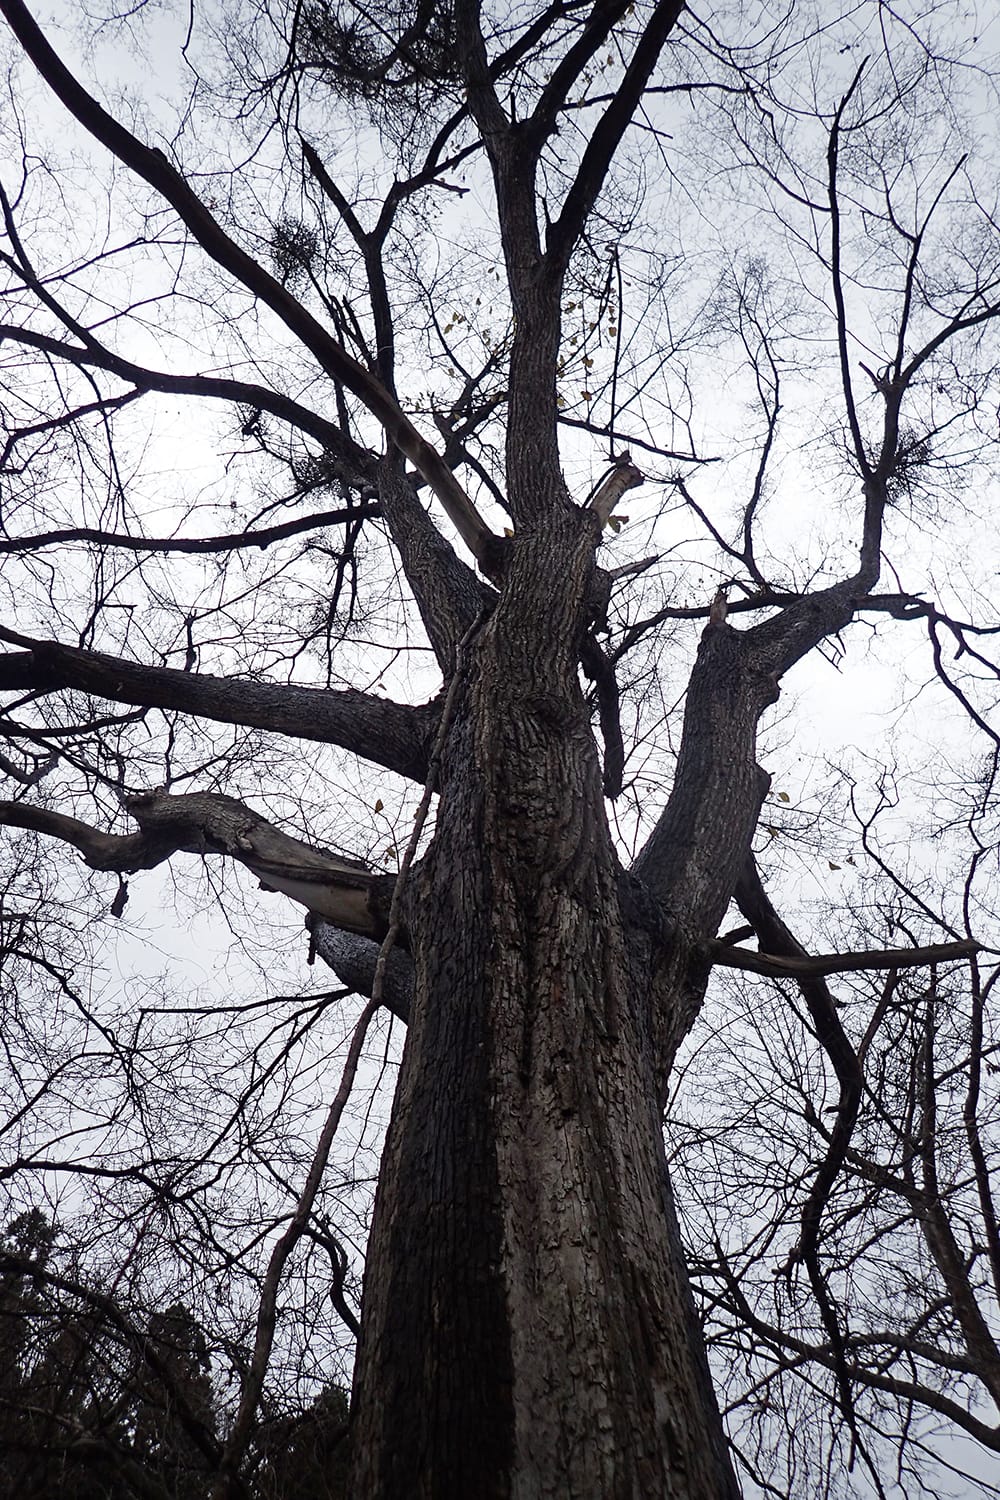 オヒョウにれの巨木を見上げてみる オヒョウニレの樹皮